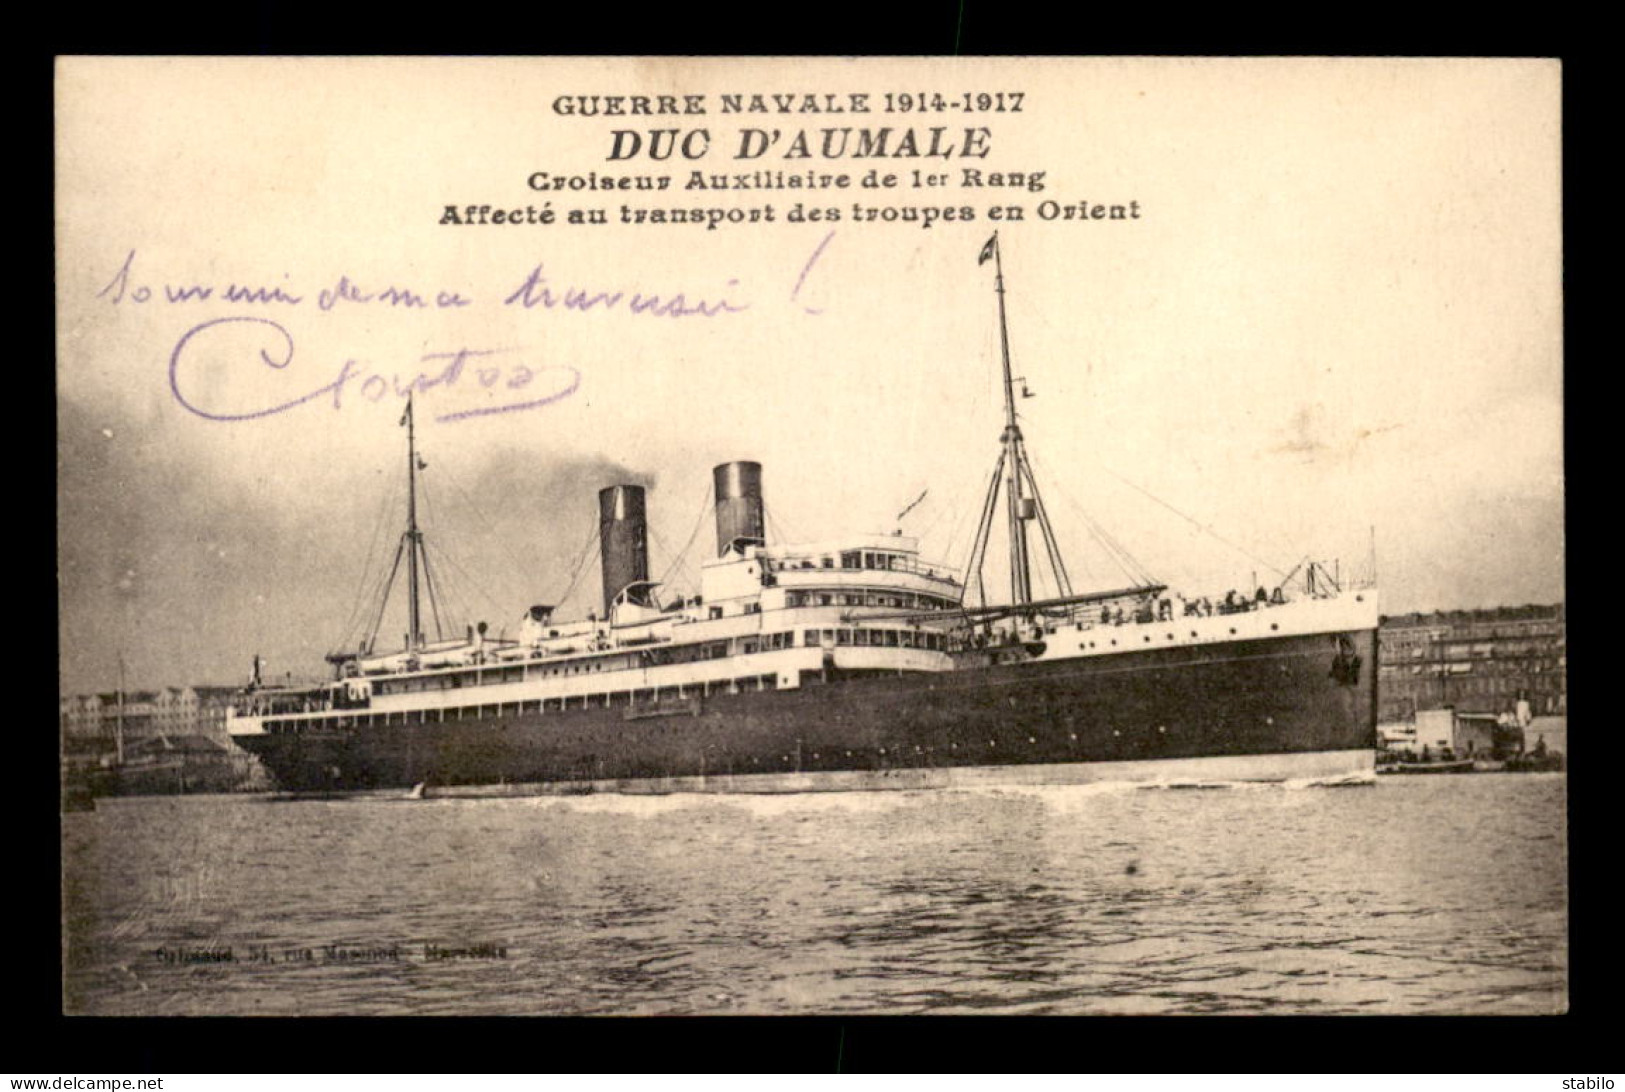 BATEAUX DE GUERRE - CROISEUR AUXILIAIRE DE 1ER RANG "DUC D'AUMALE" - Warships